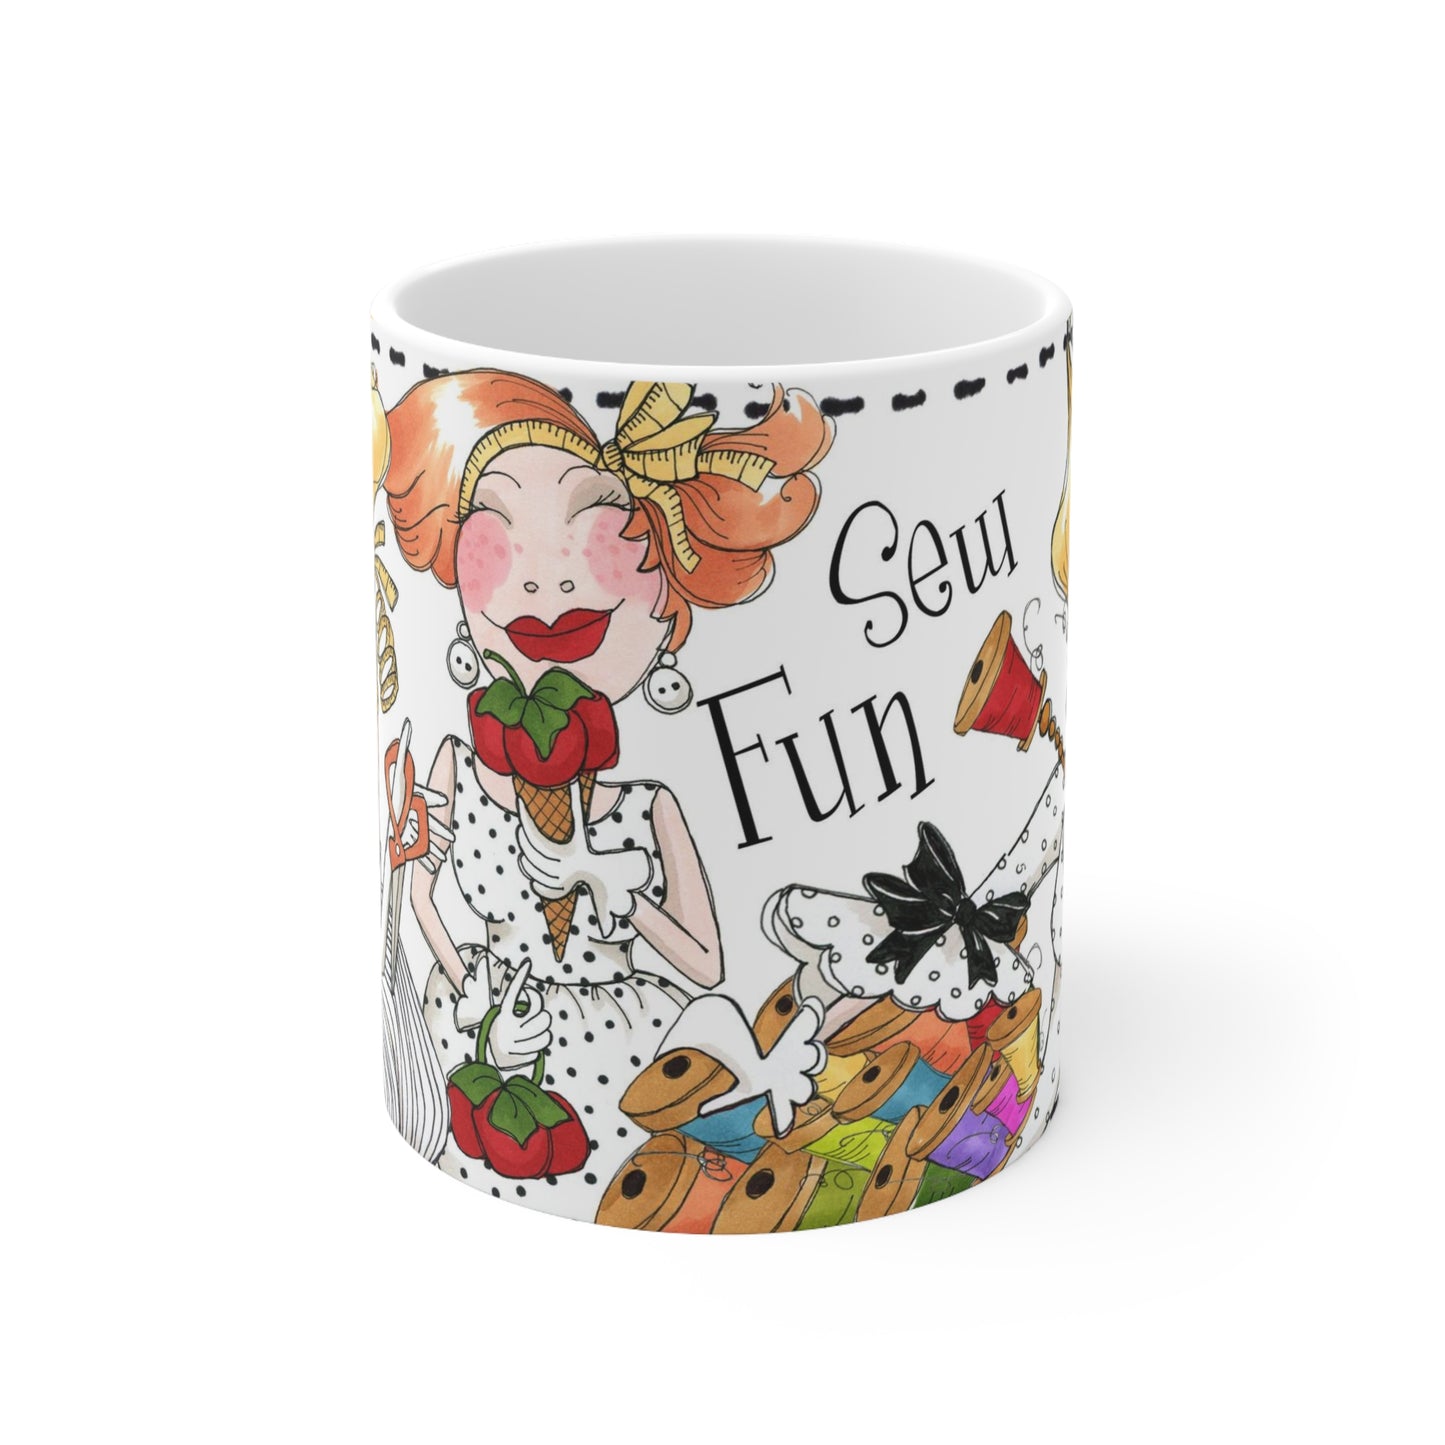 Sew Fun Mug